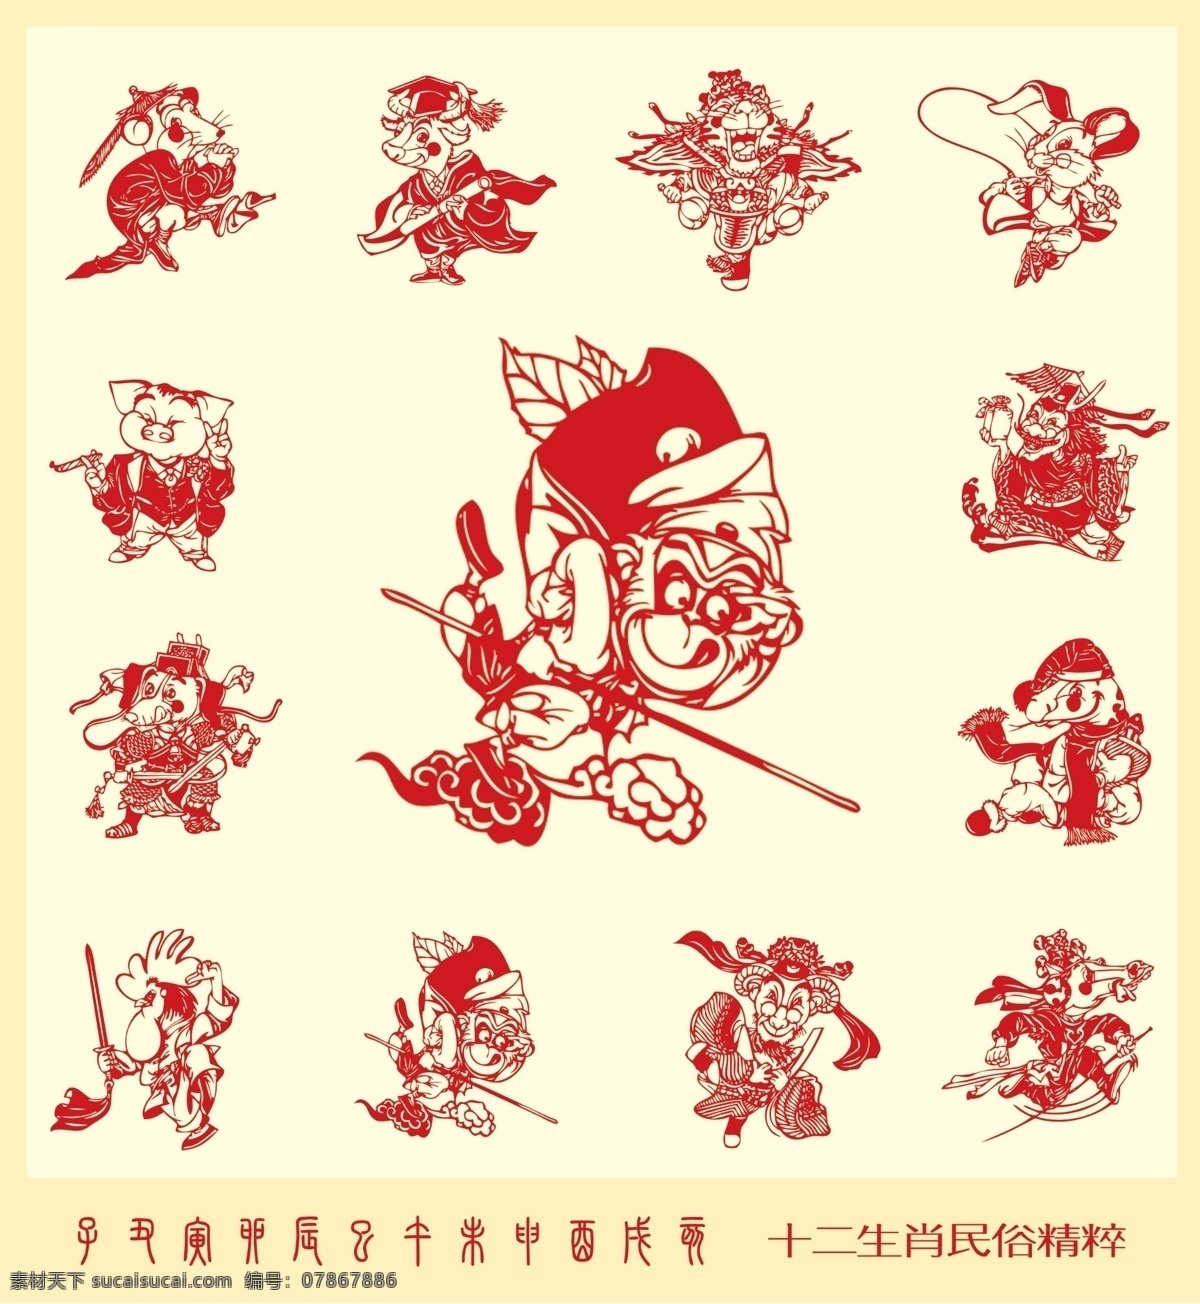 十二生肖剪纸 传统 文化 属相 传统剪纸纹样 十二生肖 12生肖 猴年 中国传统文化 艺术剪纸 创意剪纸 分层